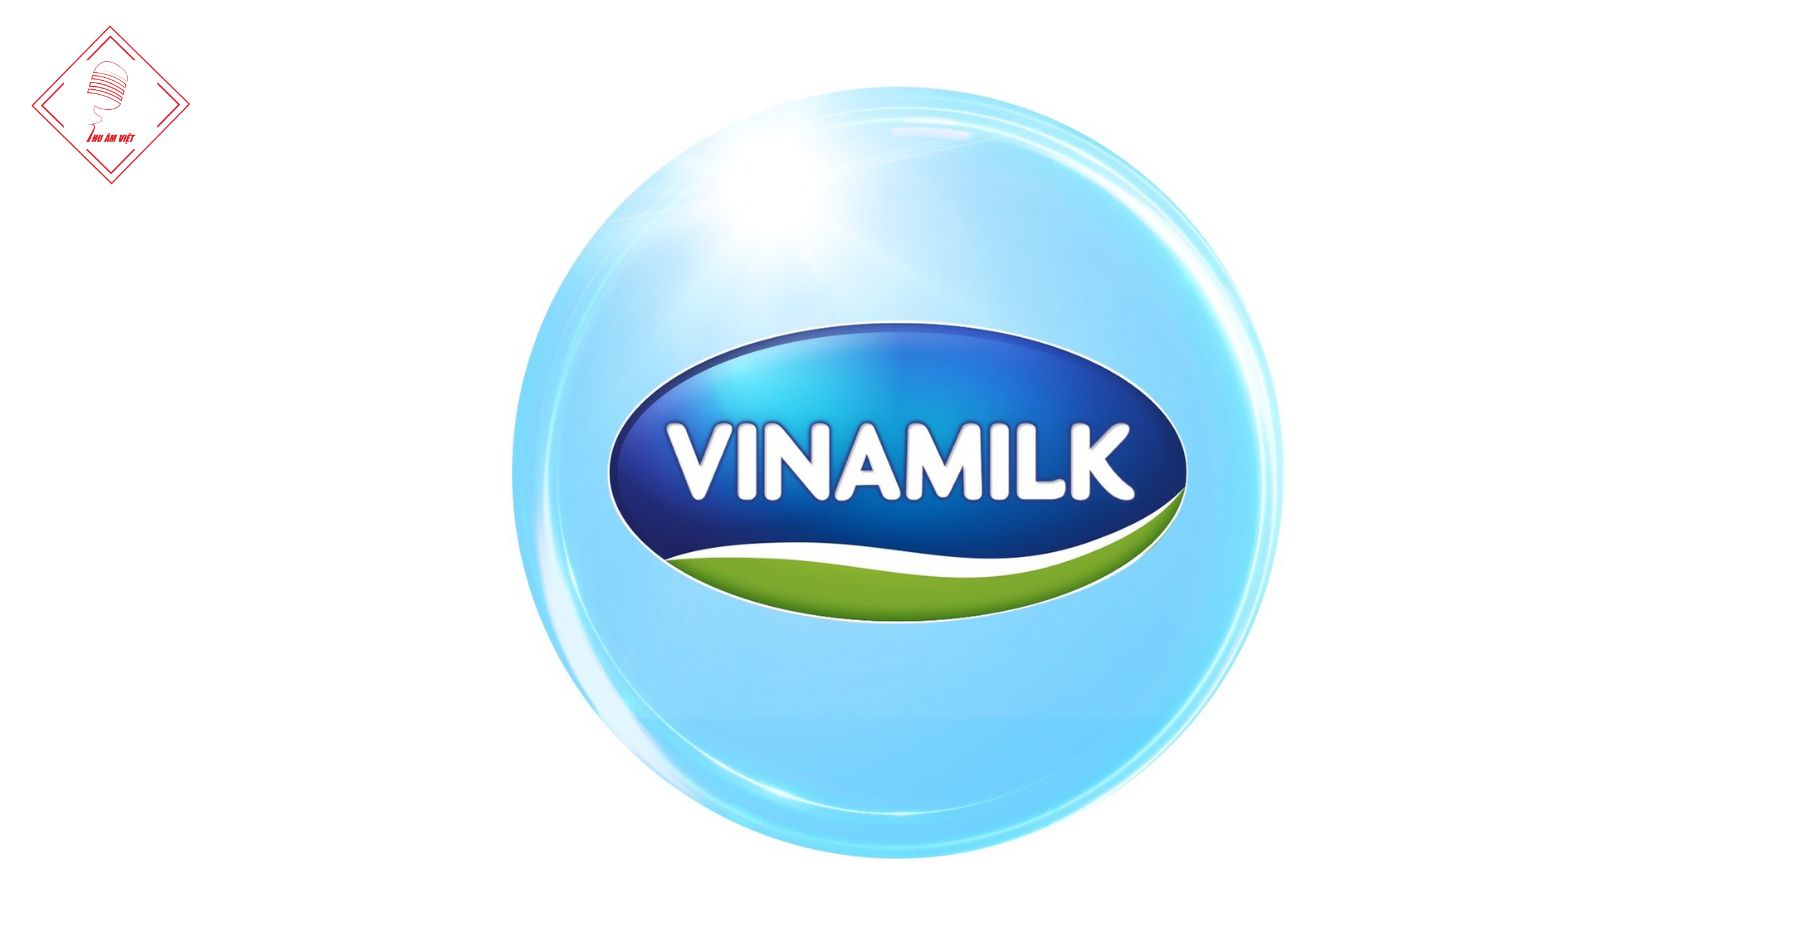 Vinamilk là thương hiệu sữa lâu đời và uy tín số 1 tại Việt Nam